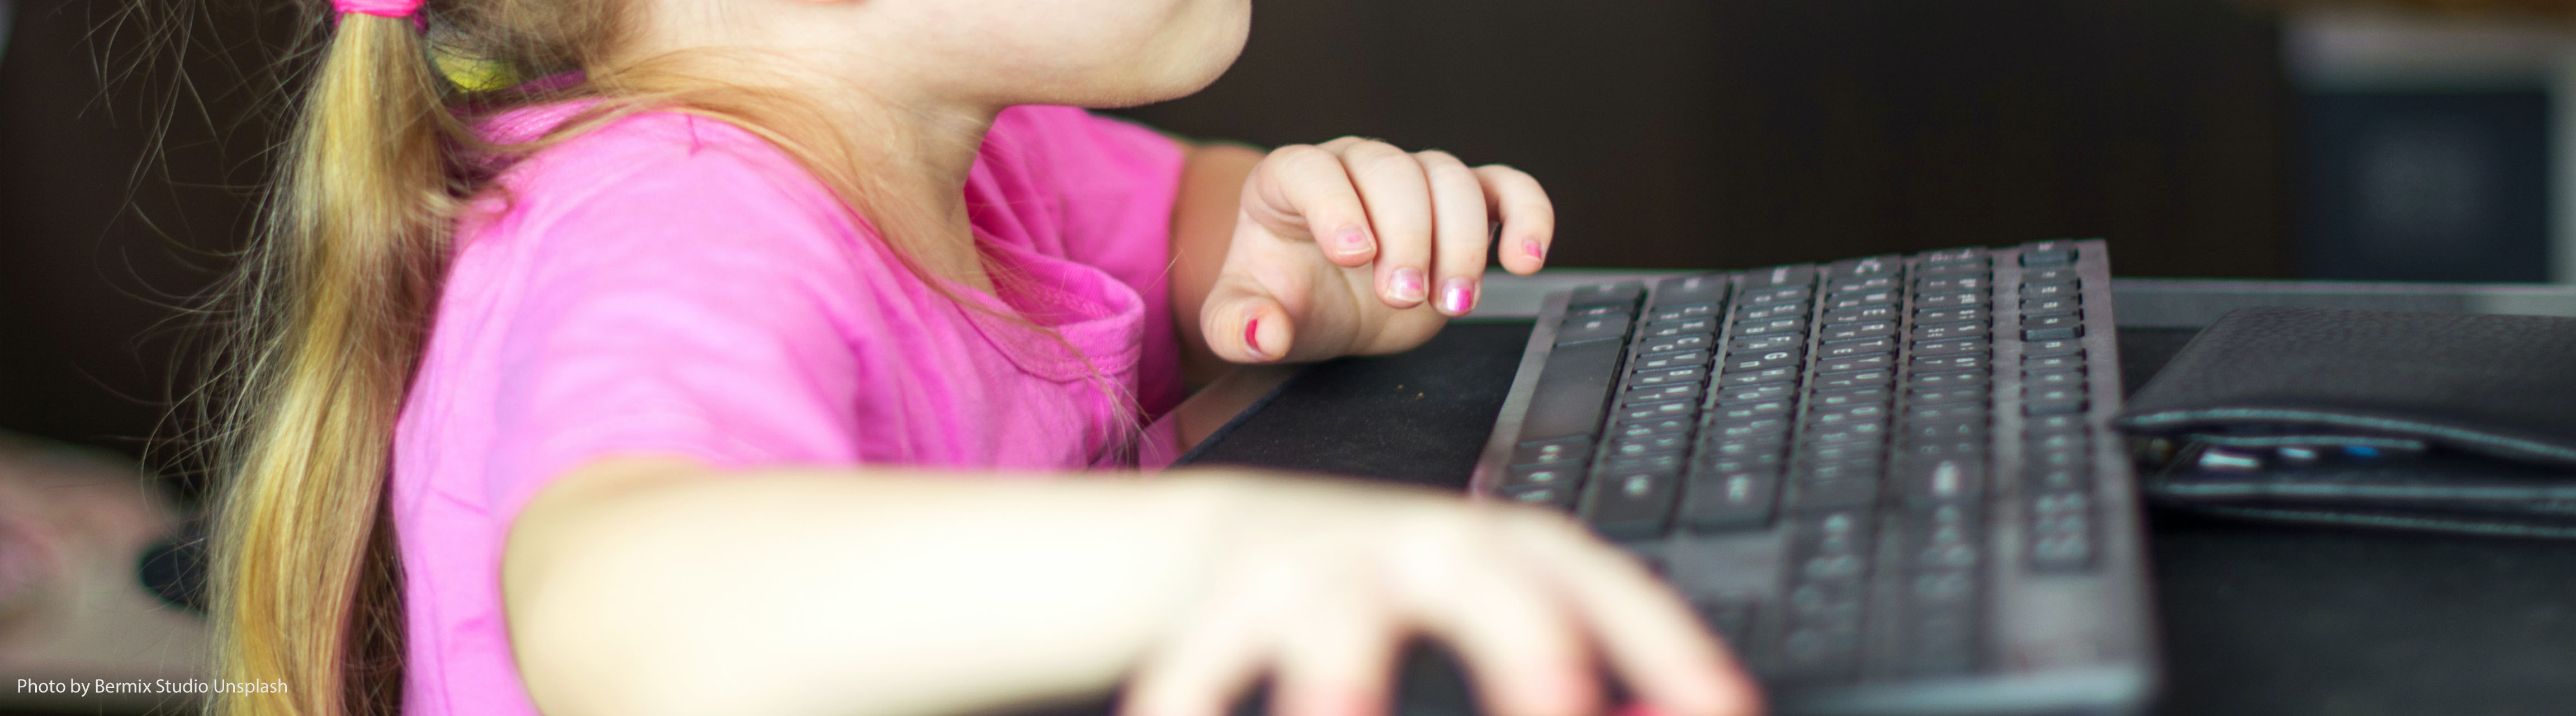 Kleines Mädchen vor dem Bildschirm beim Bedienen der Maus, Gewalt und Geschlechterrollen in Computerspielen, ZIMD